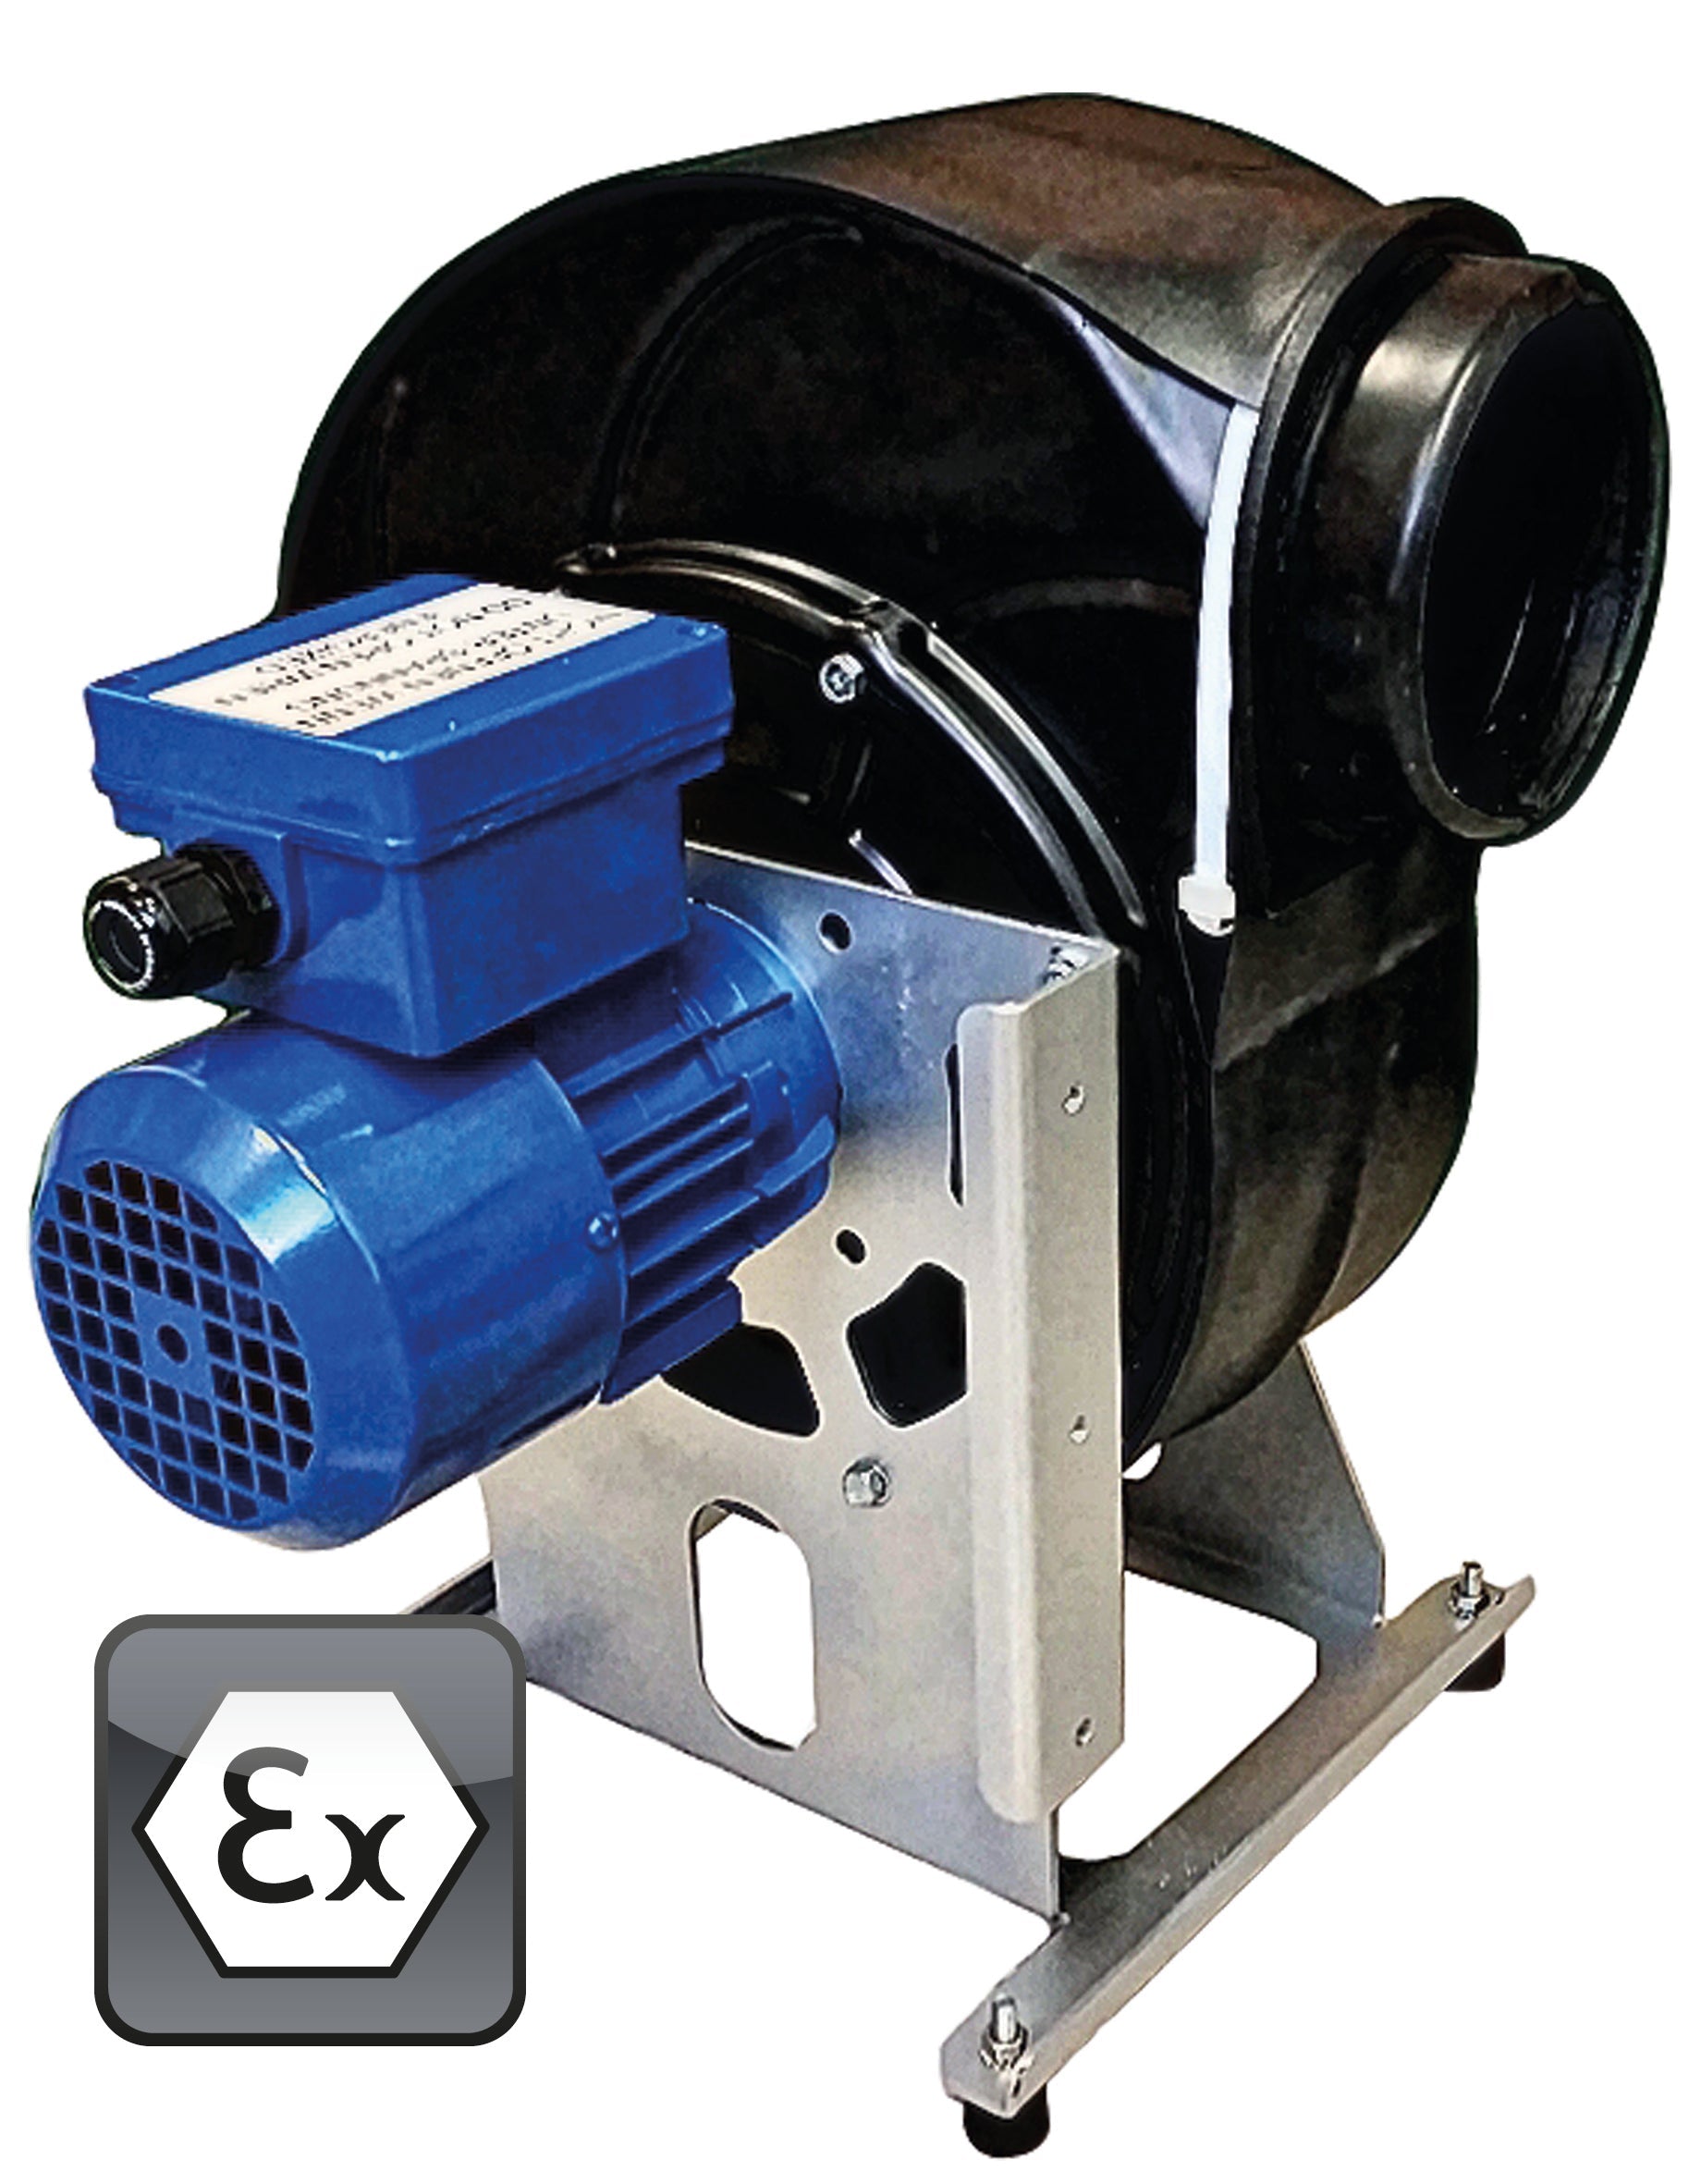 Ventilator Modell EP.VE.29426 für Gefahrstoffarbeitsplätze, Polypropylen